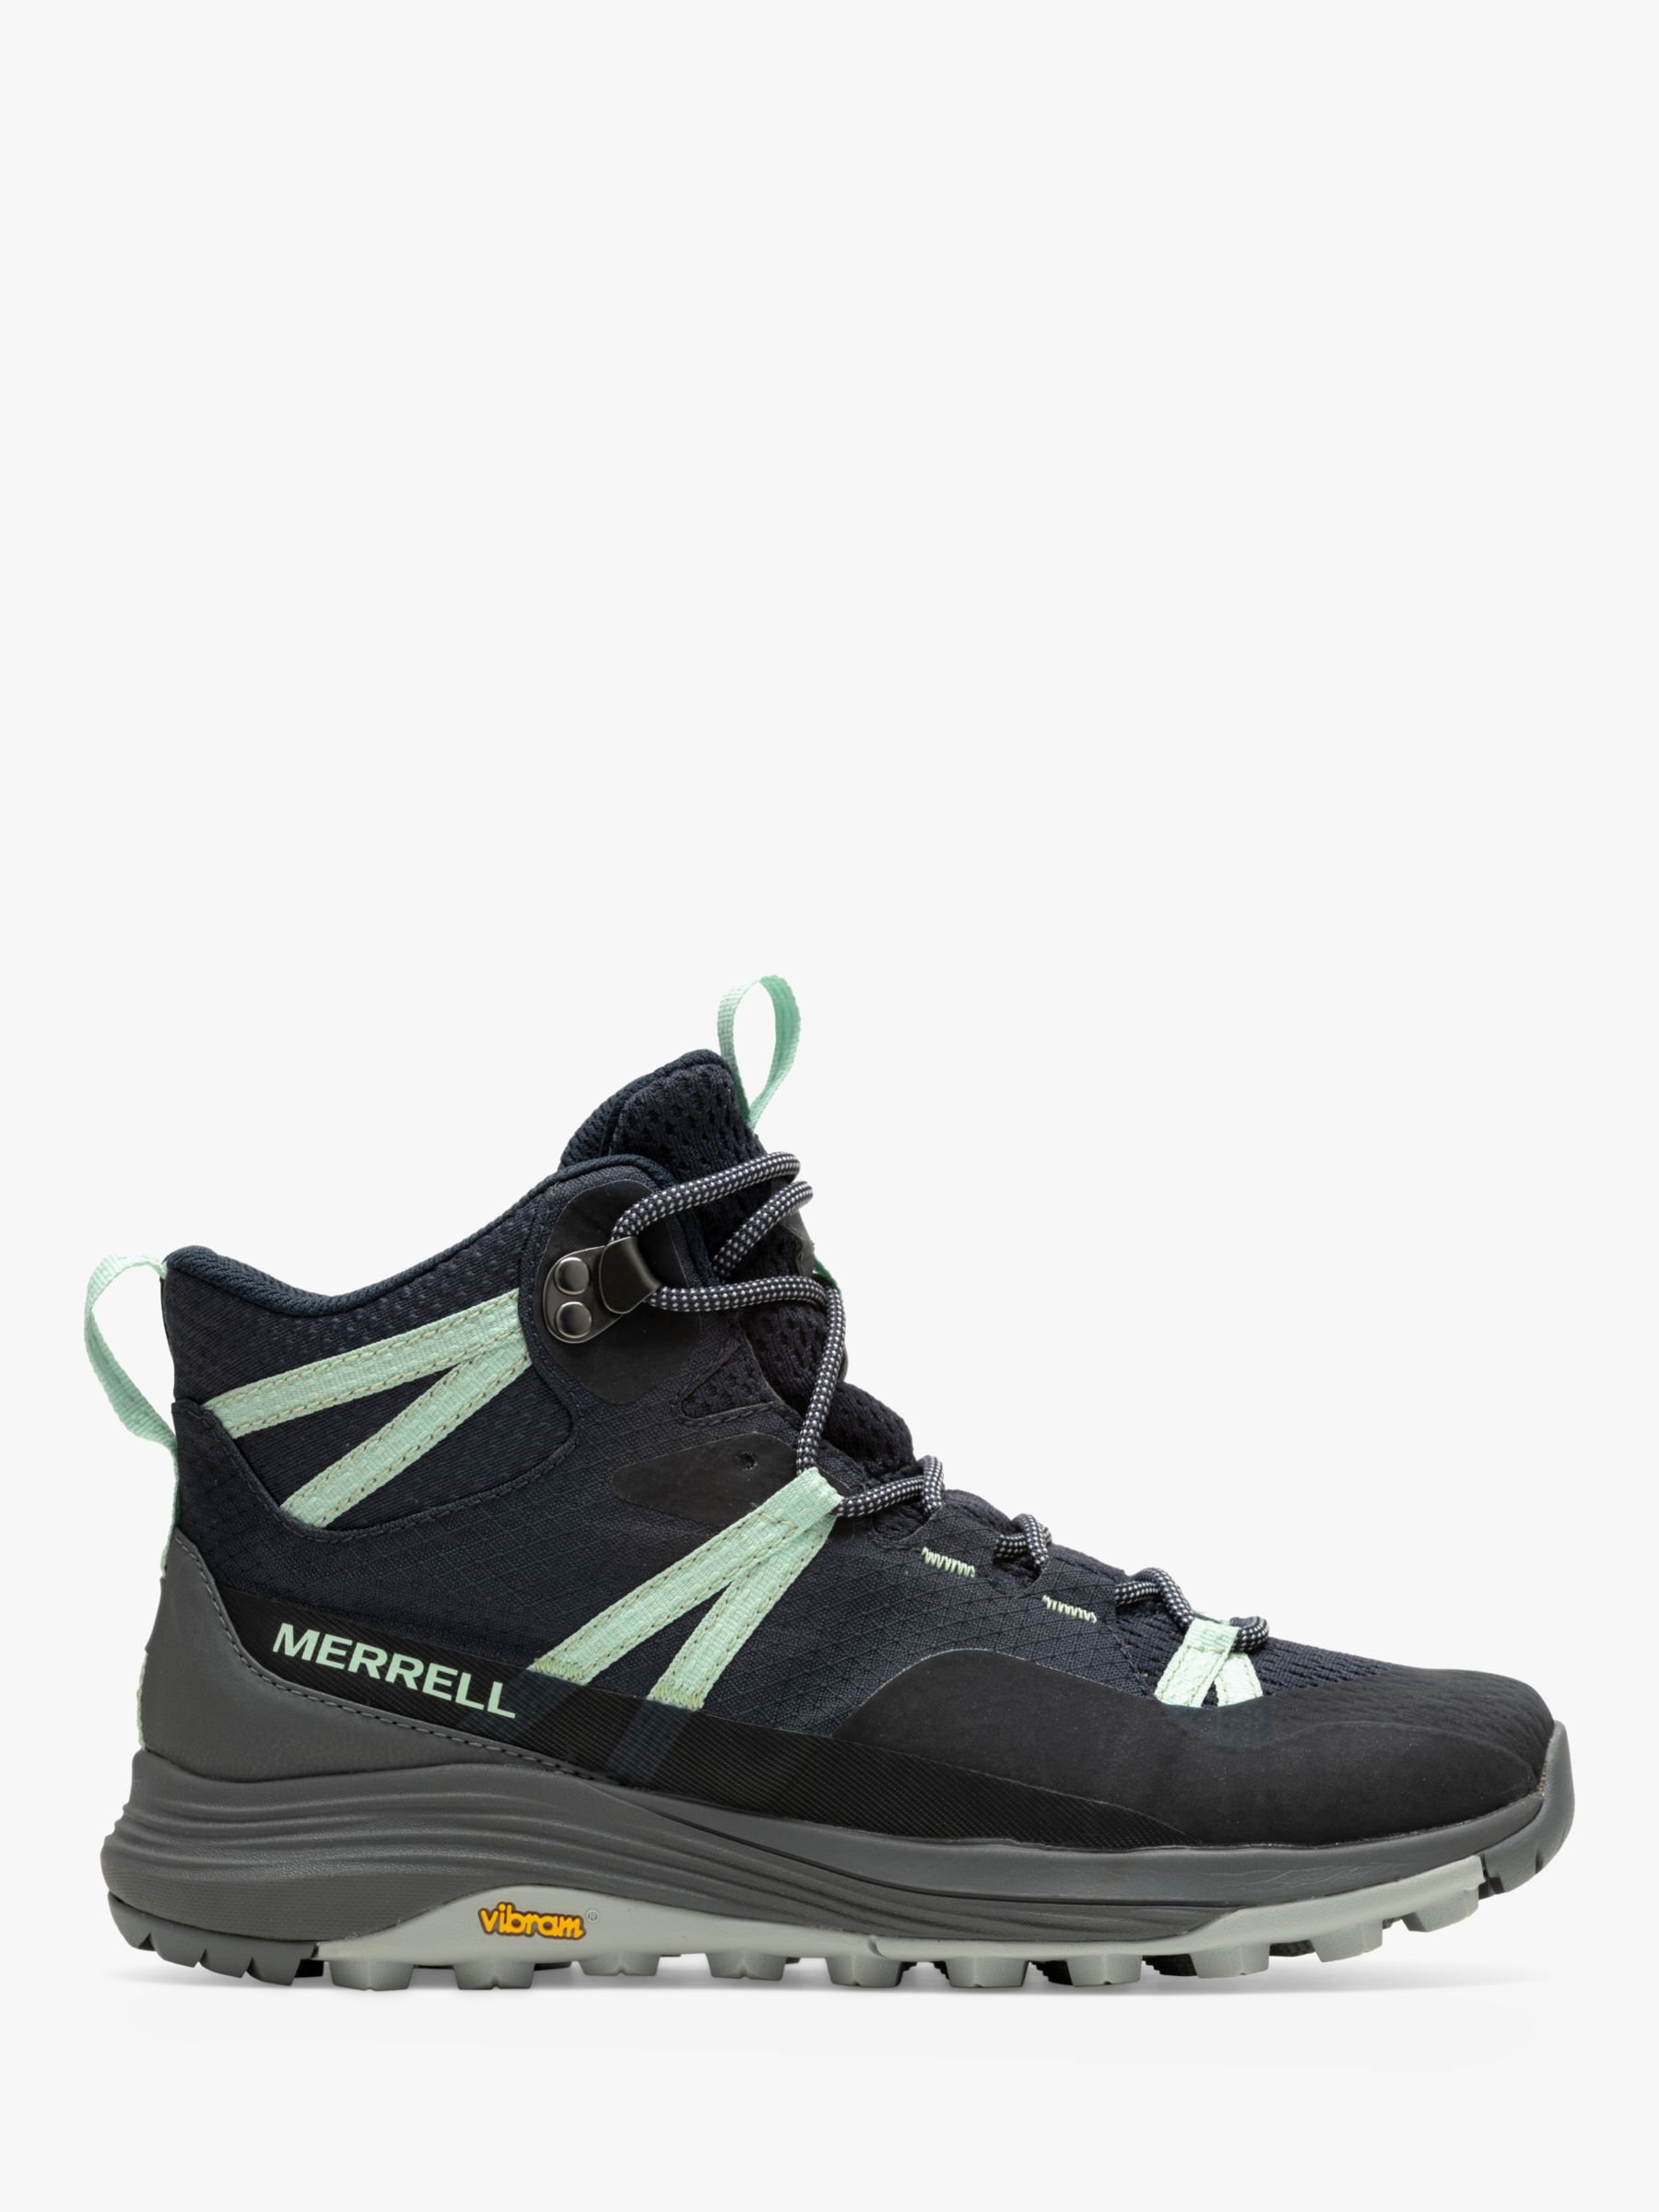 Merrell Siren 4 Women's Waterproof Gore-Tex Mid Walking Boots, Navy, 4